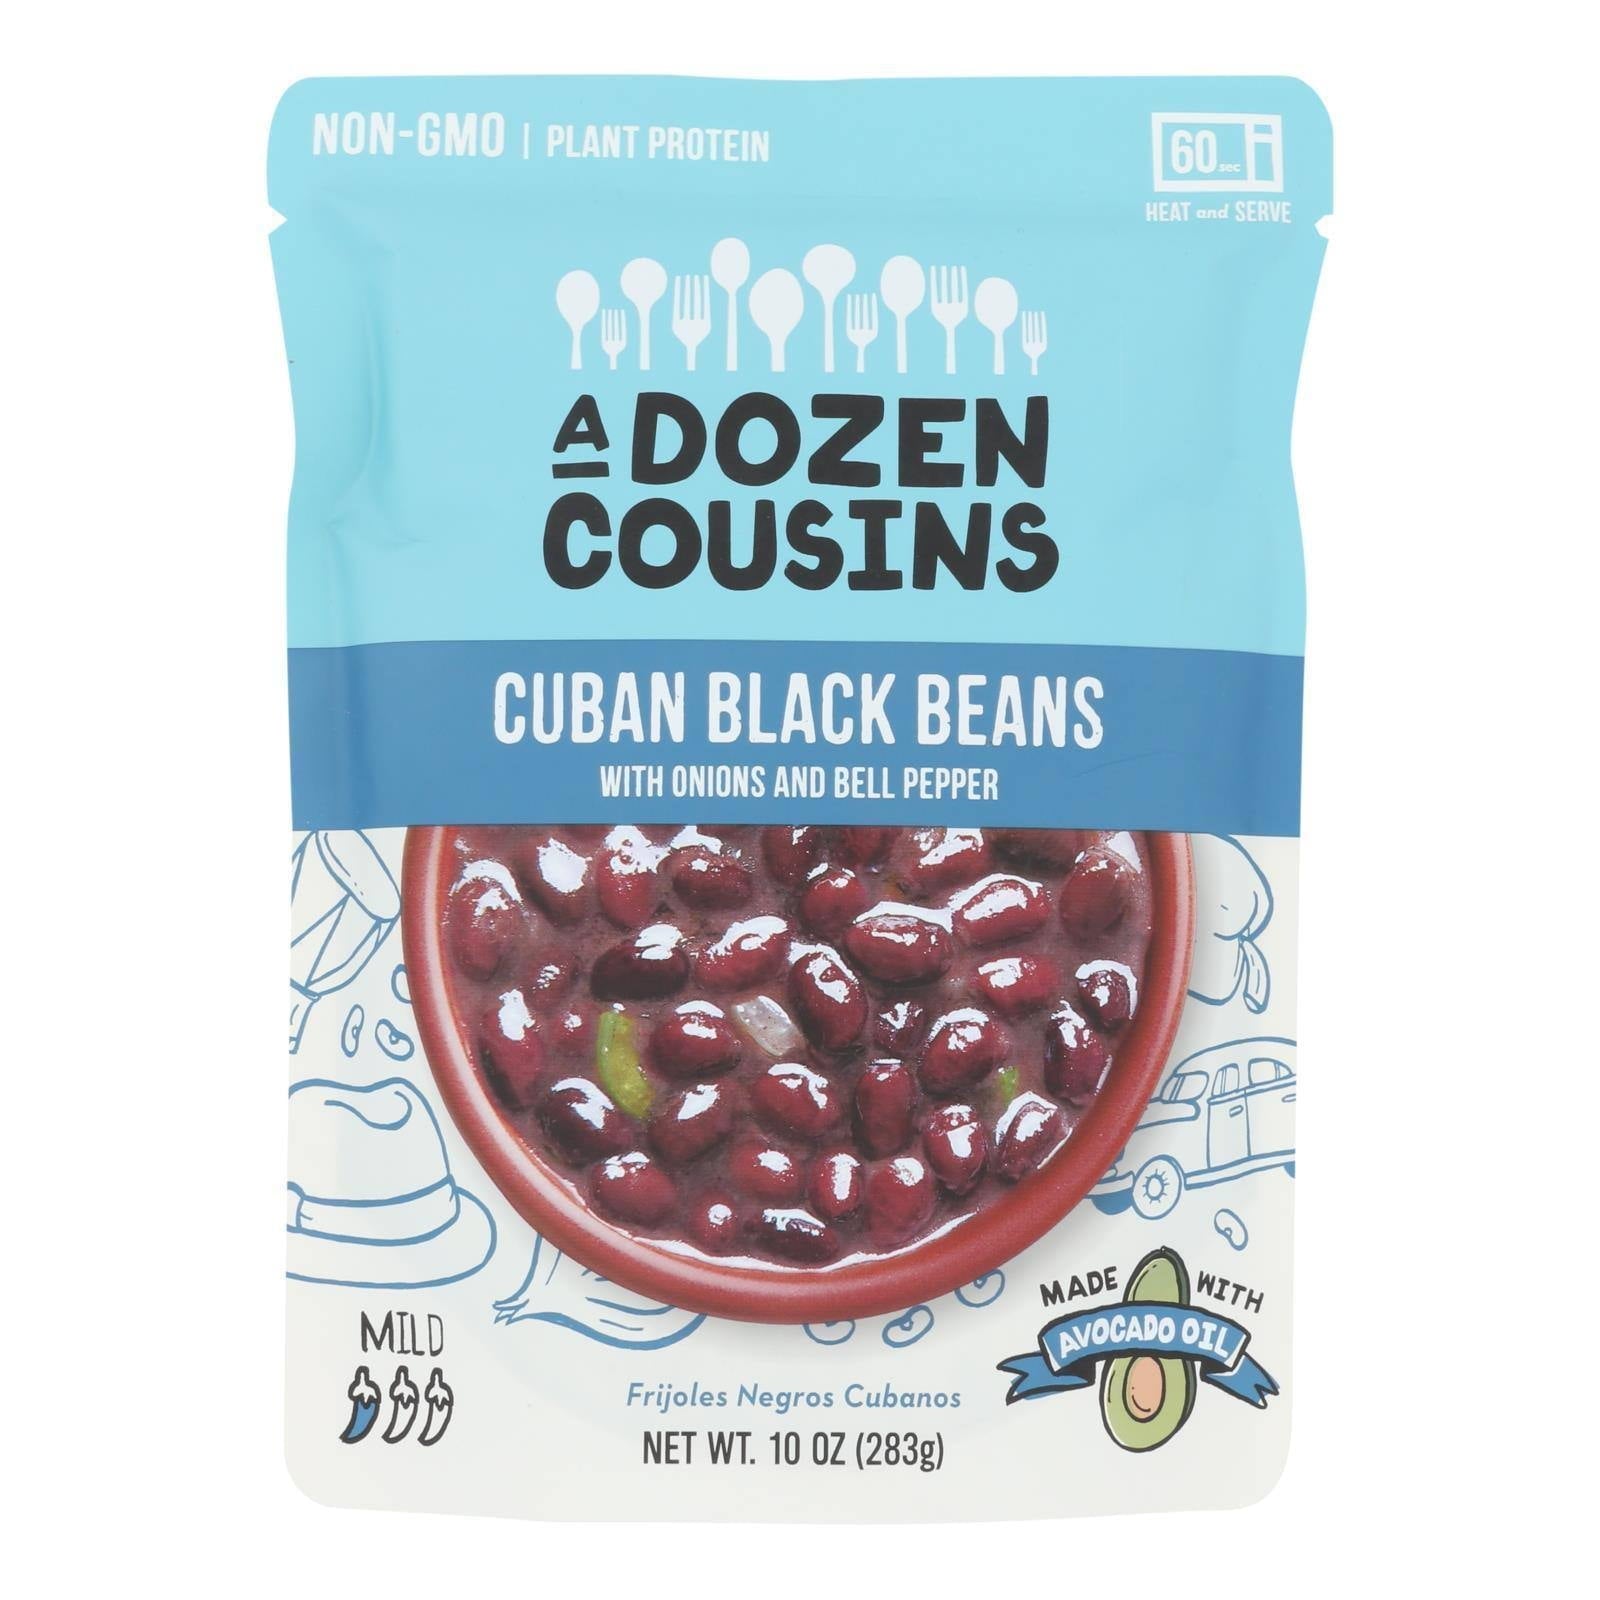 A Dozen Cousins Canned Cuban Black Beans